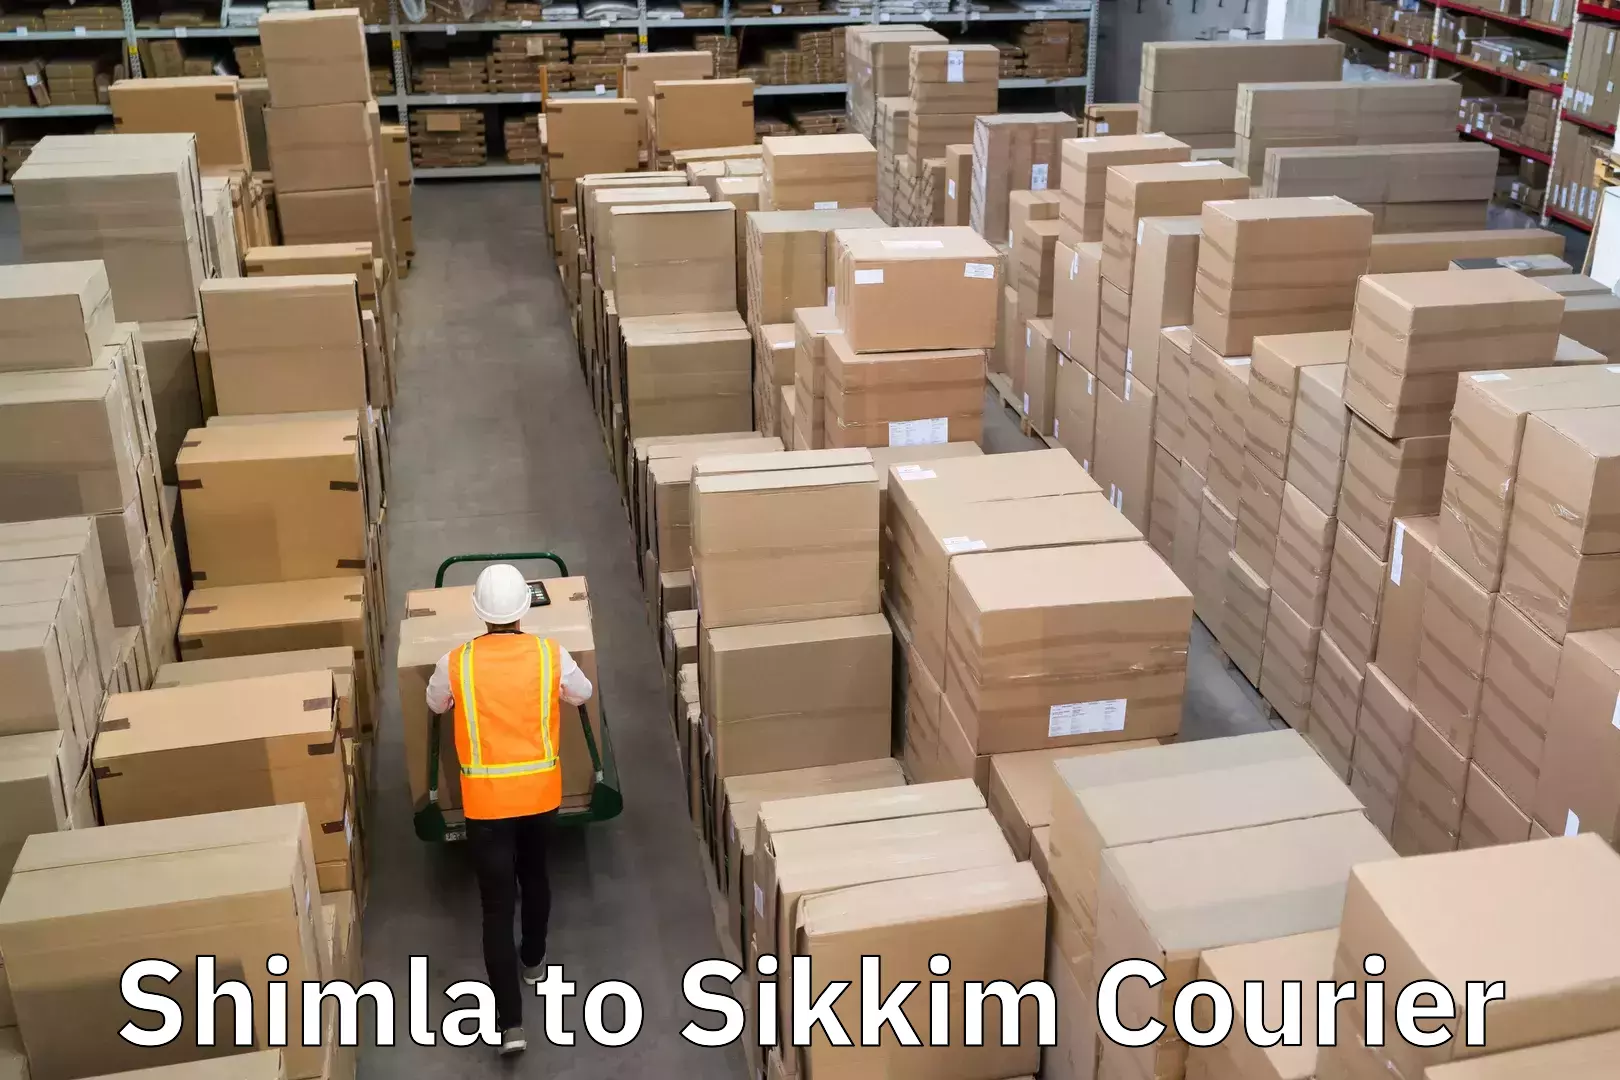 Door-to-door freight service Shimla to Sikkim